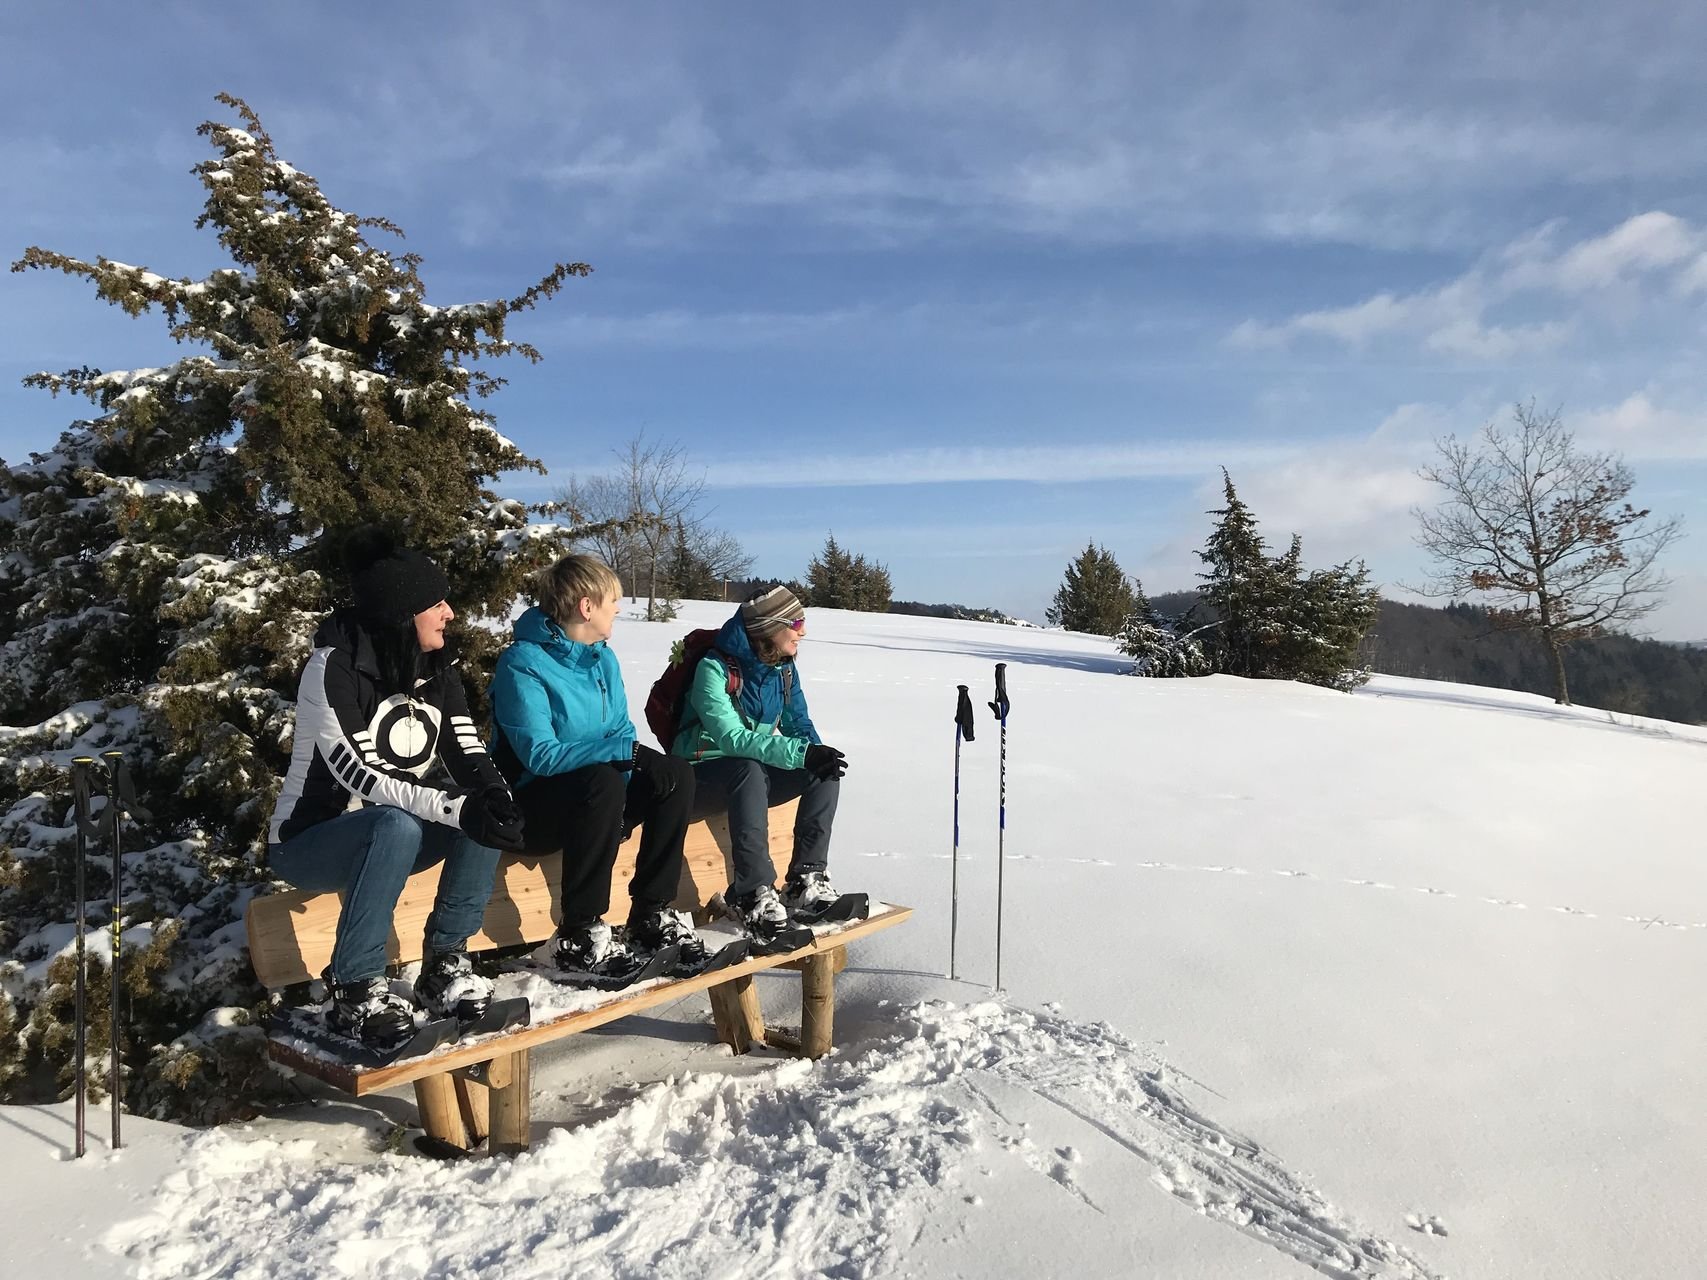 Drei Schneeschuhwanderer*innen sitzen auf einer Holzbank und schauen mit einem Lächeln in die Ferne. Ihre Wanderstöcke stecken im Schnee. Es ist sonniges Wetter und etwas bewölkt. Im Hintergrund sind vereinzelt Bäume.